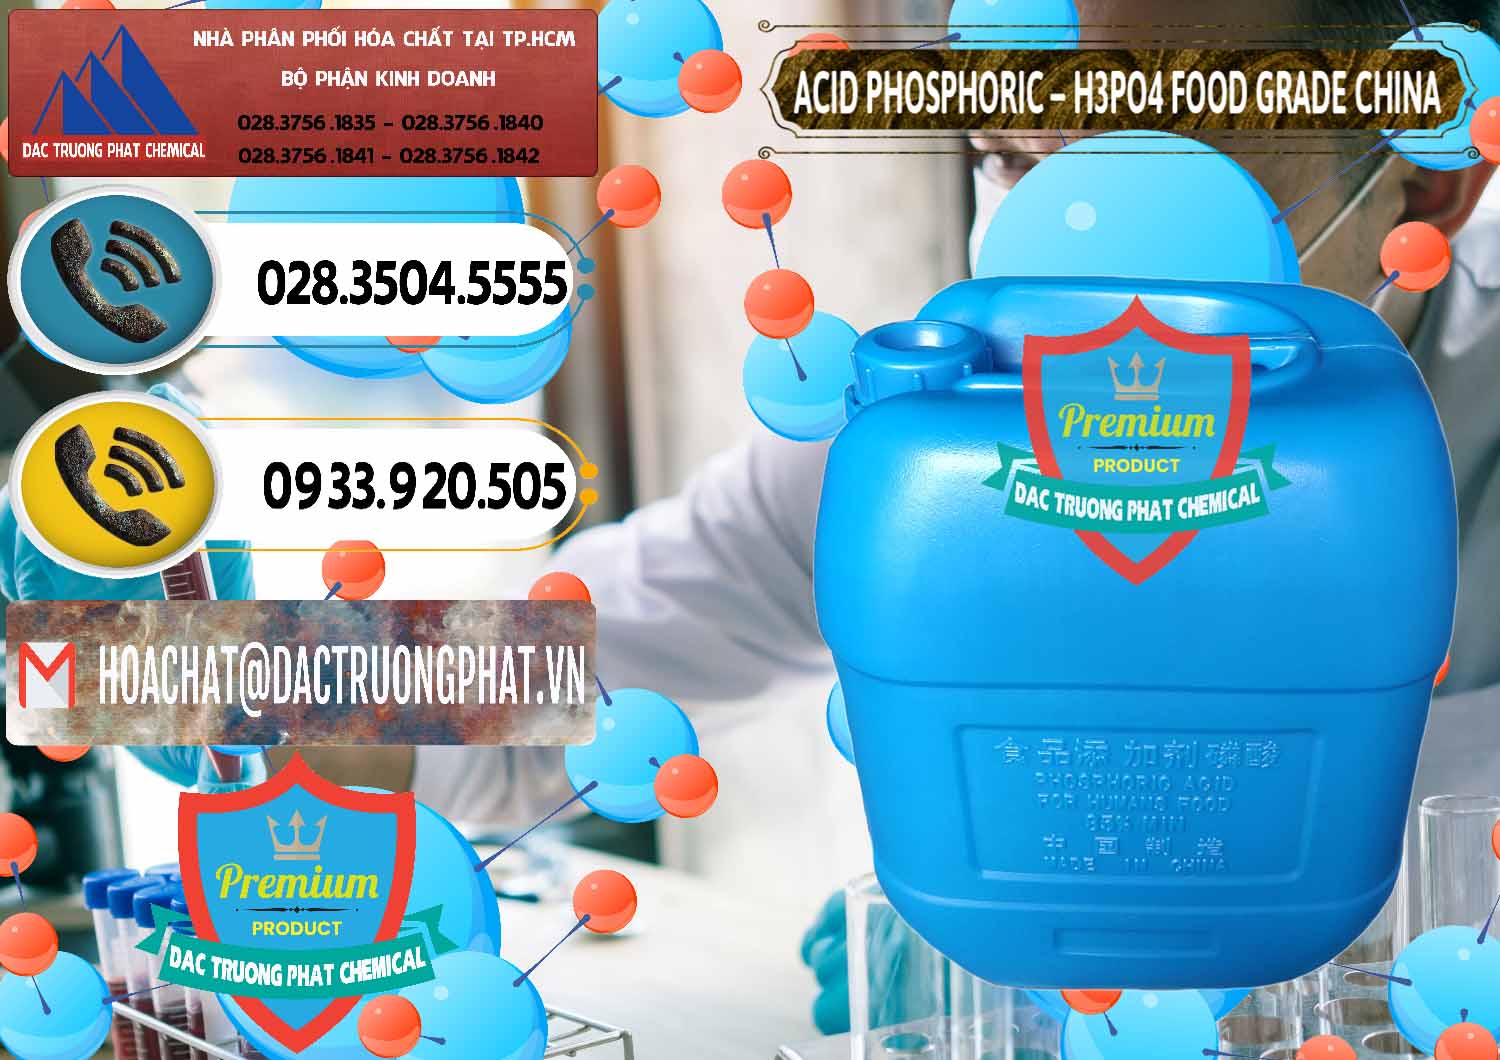 Nơi cung ứng ( bán ) Acid Phosphoric – H3PO4 85% Food Grade Trung Quốc China - 0015 - Cty chuyên bán và phân phối hóa chất tại TP.HCM - hoachatdetnhuom.vn